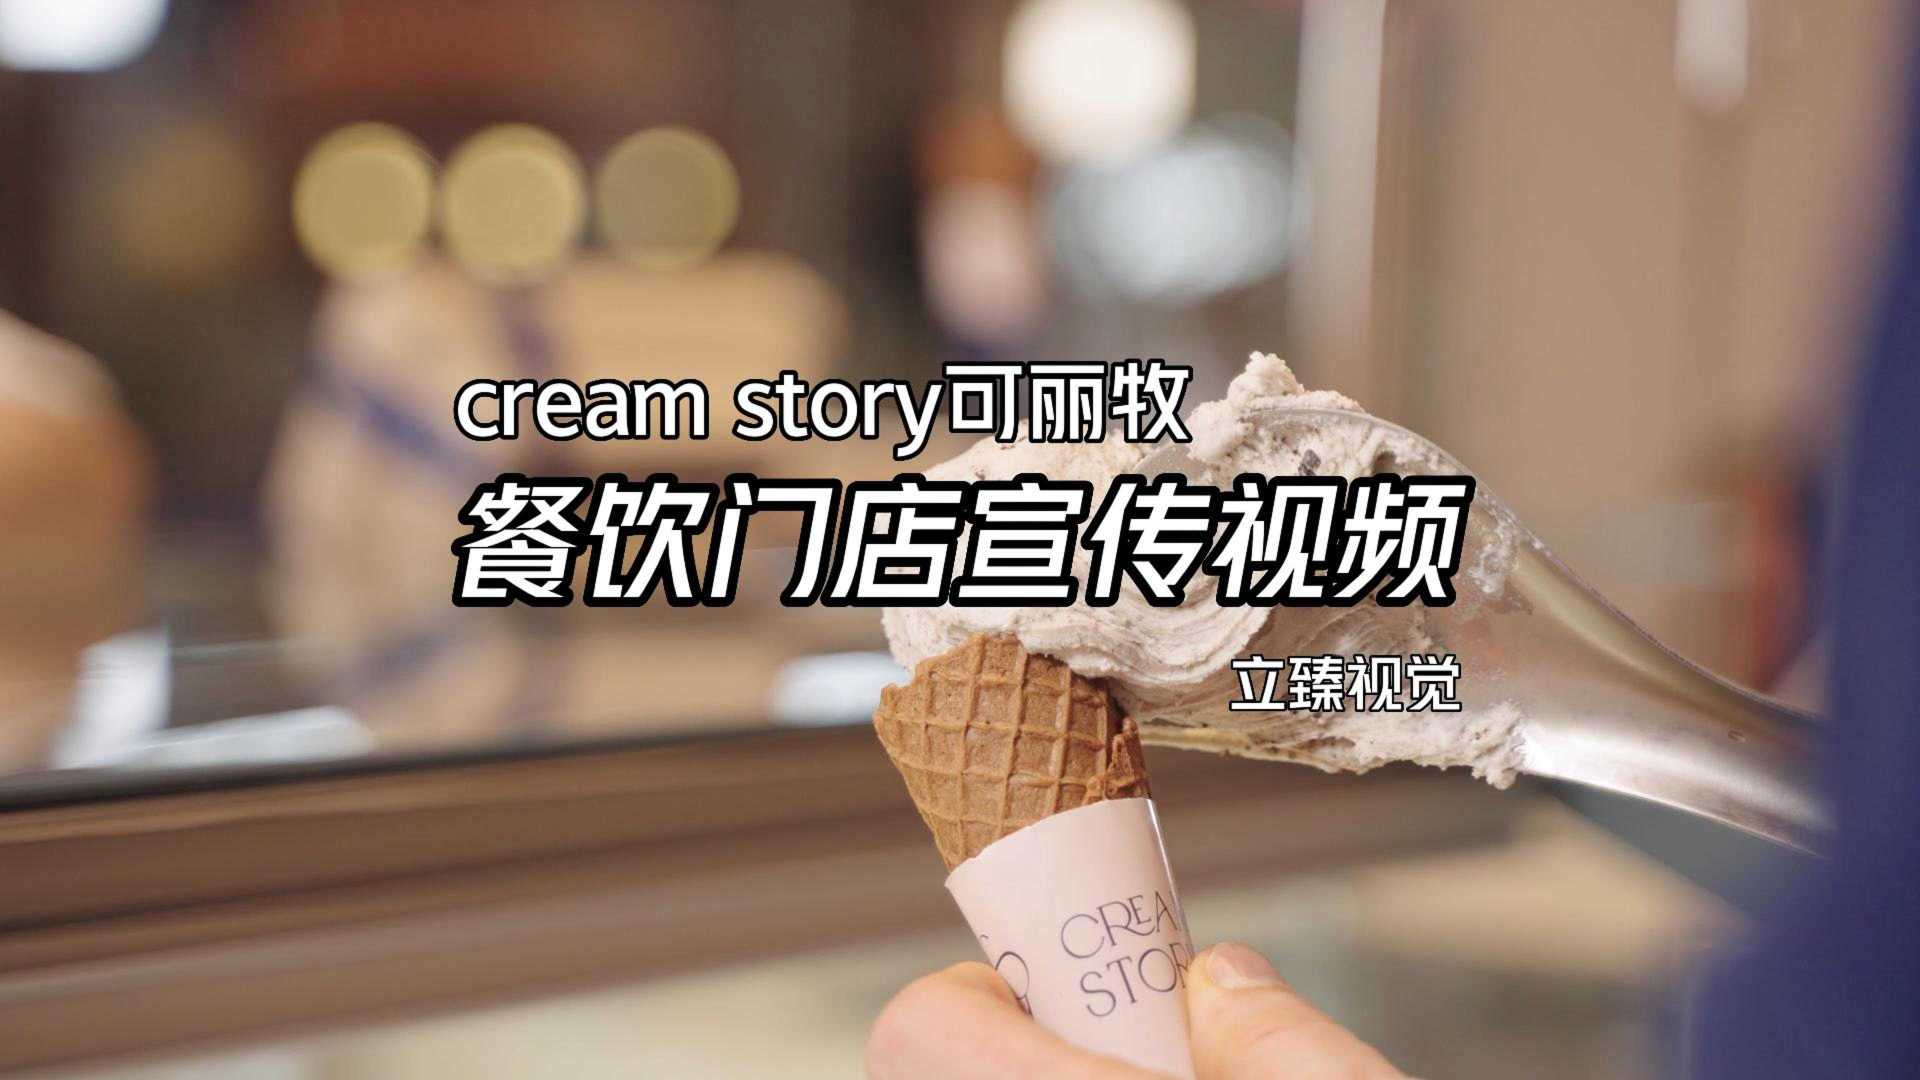 意大利手工冰淇淋cream story可丽牧宣传视频